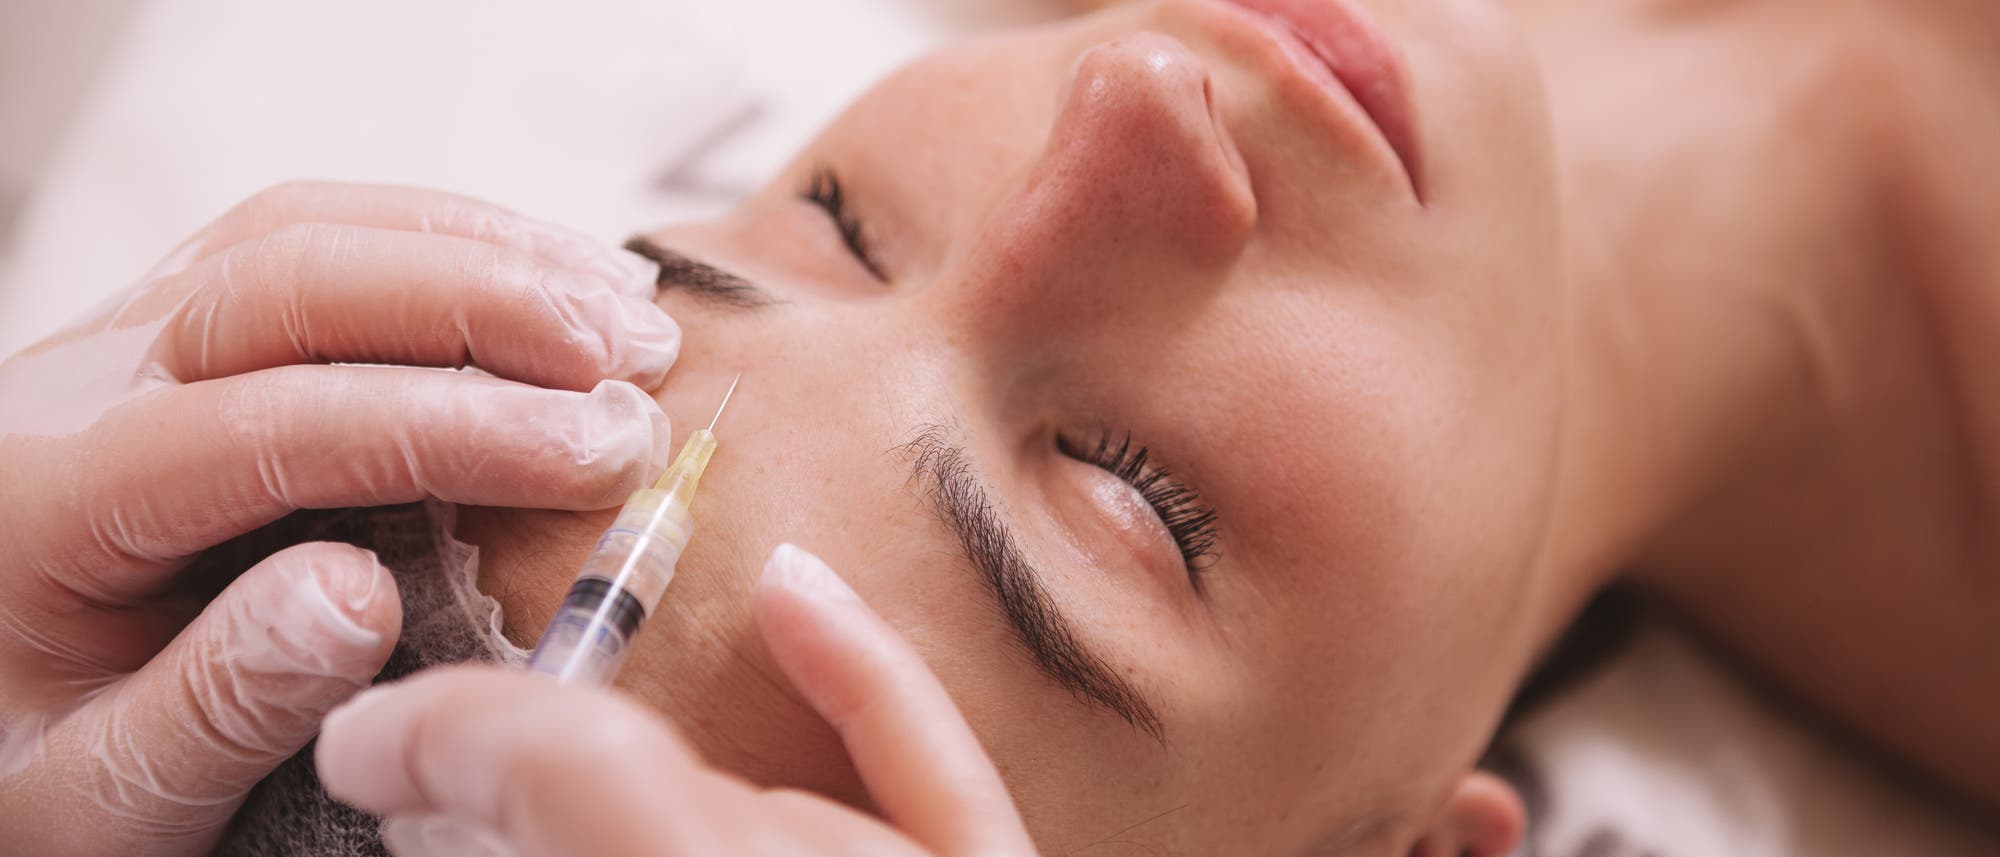 Frau bekommt Botox in Stirn gespritzt